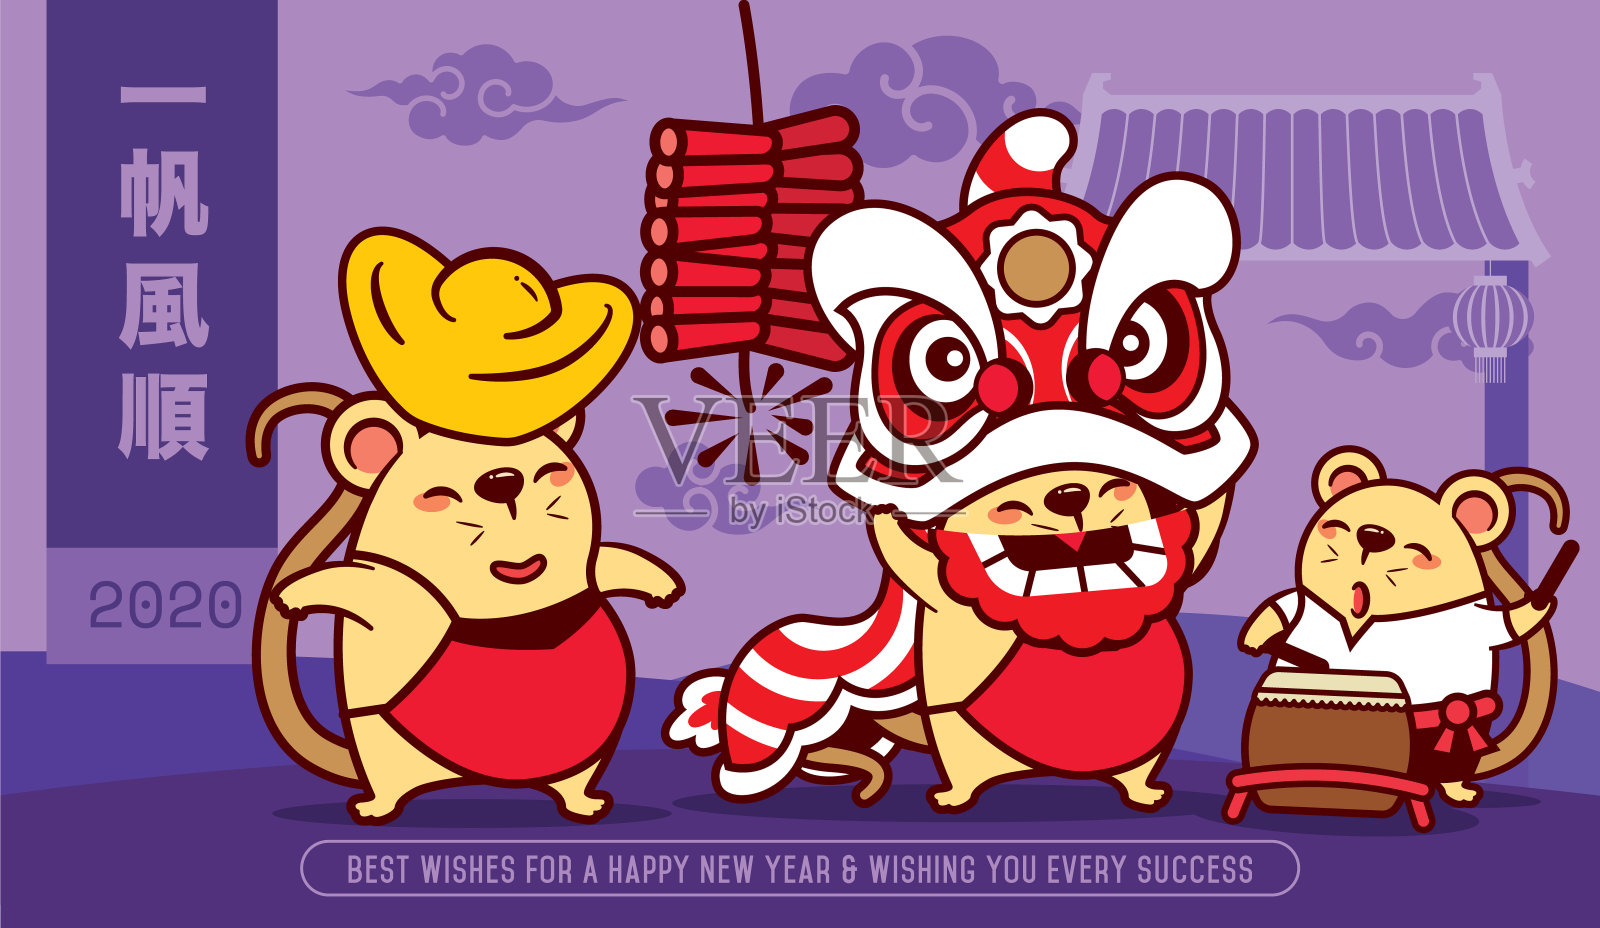 2020年新年快乐。年的老鼠。可爱的老鼠与狮子跳舞和携带金元宝在唐人街的背景。祝你事事顺利-向量设计模板素材